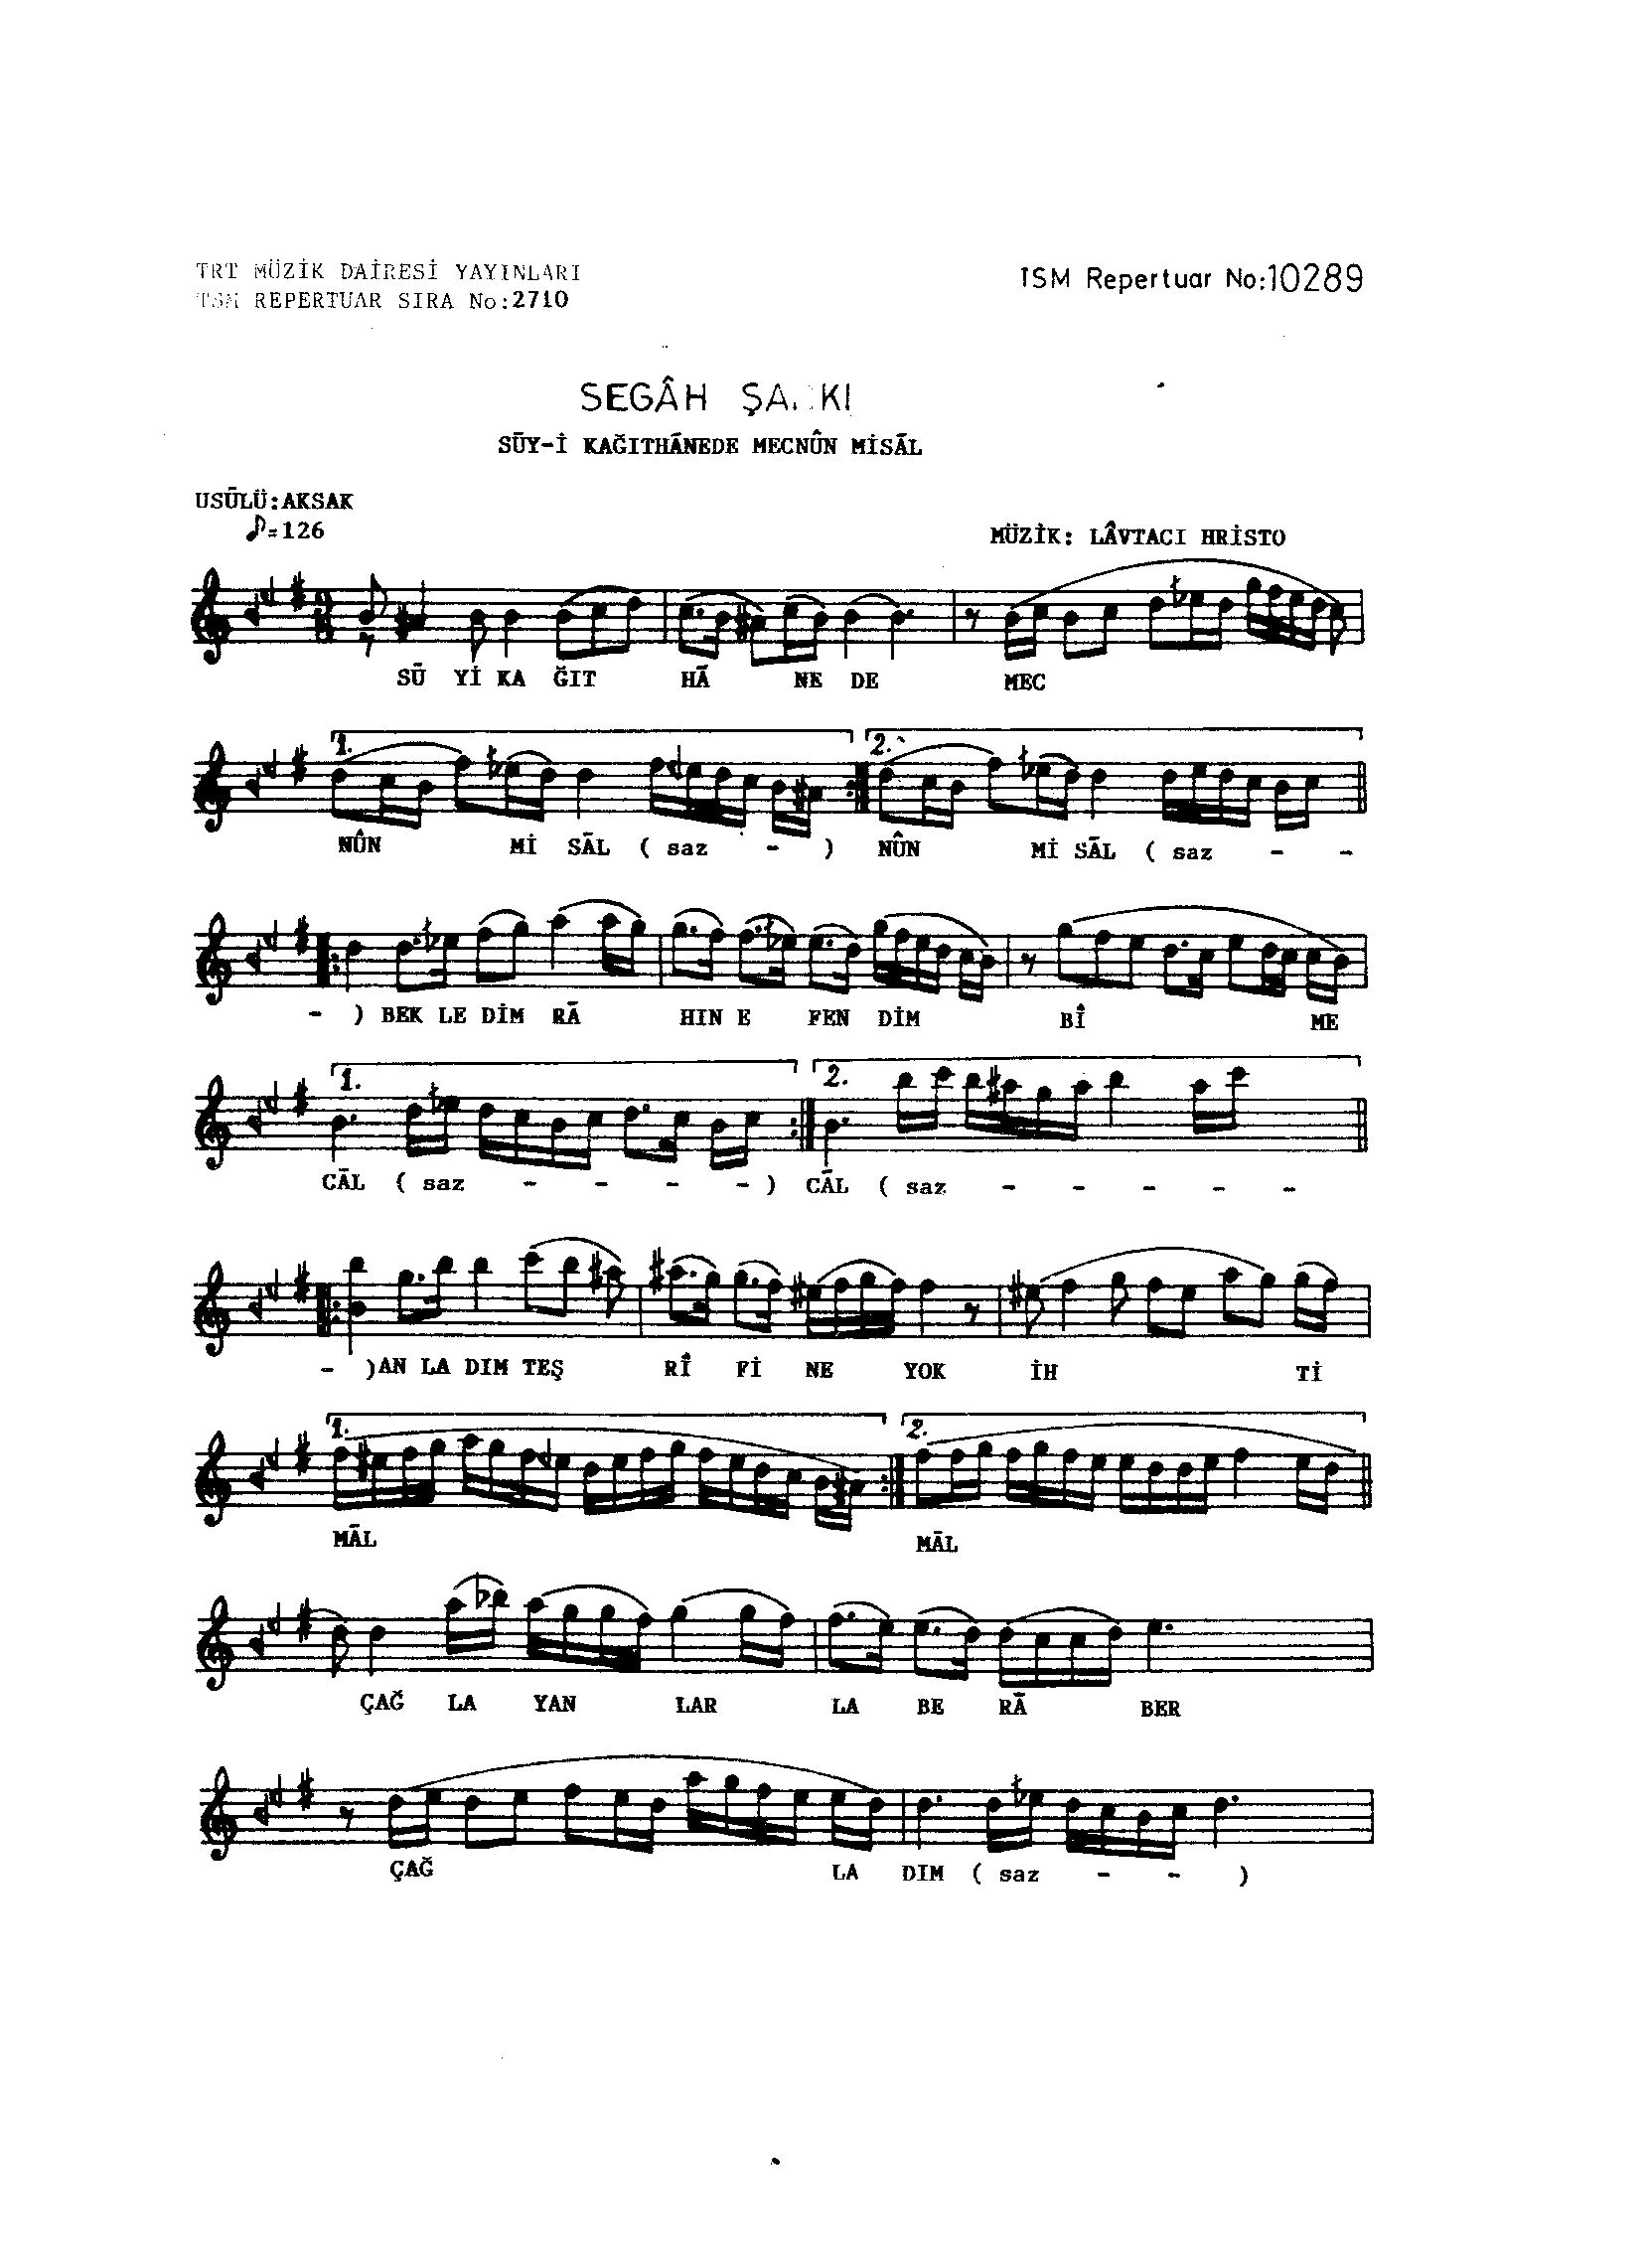 Segâh - Şarkı - Lavtacı Hristo - Sayfa 1